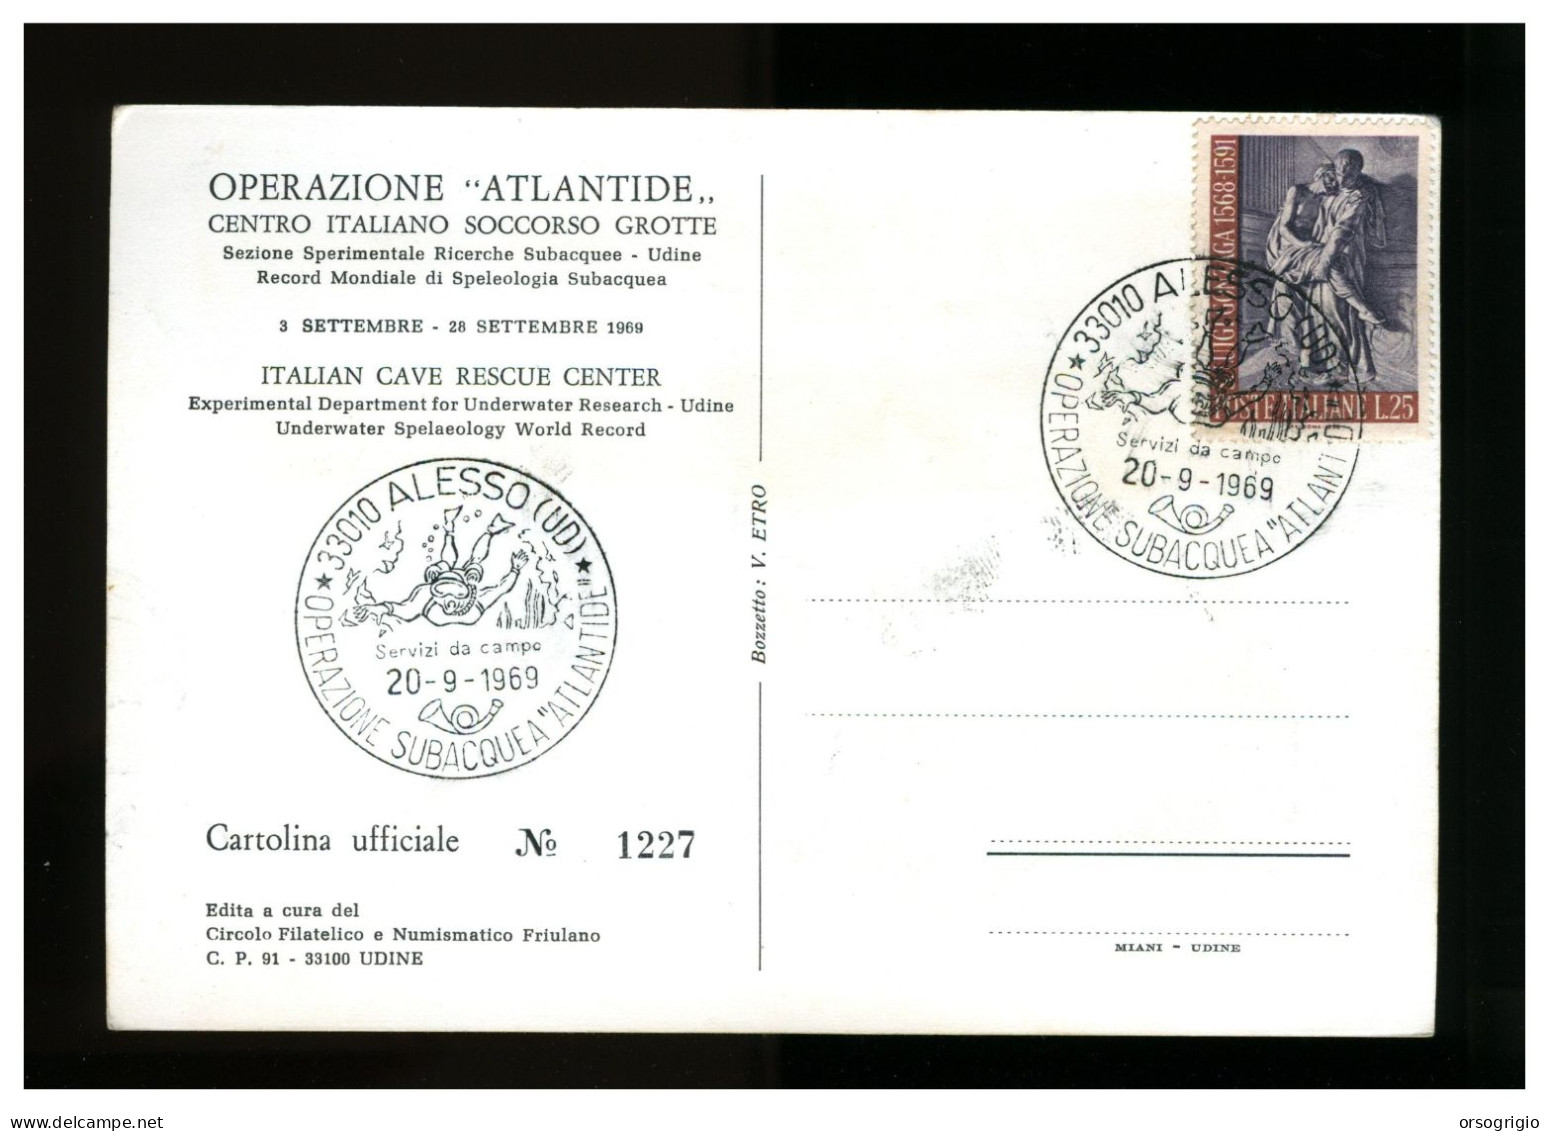 ITALIA - OPERAZIONE ATLANTIDE 1969 - CAVE RESCUE - ALESSO - Città Subacquea - Tauchen